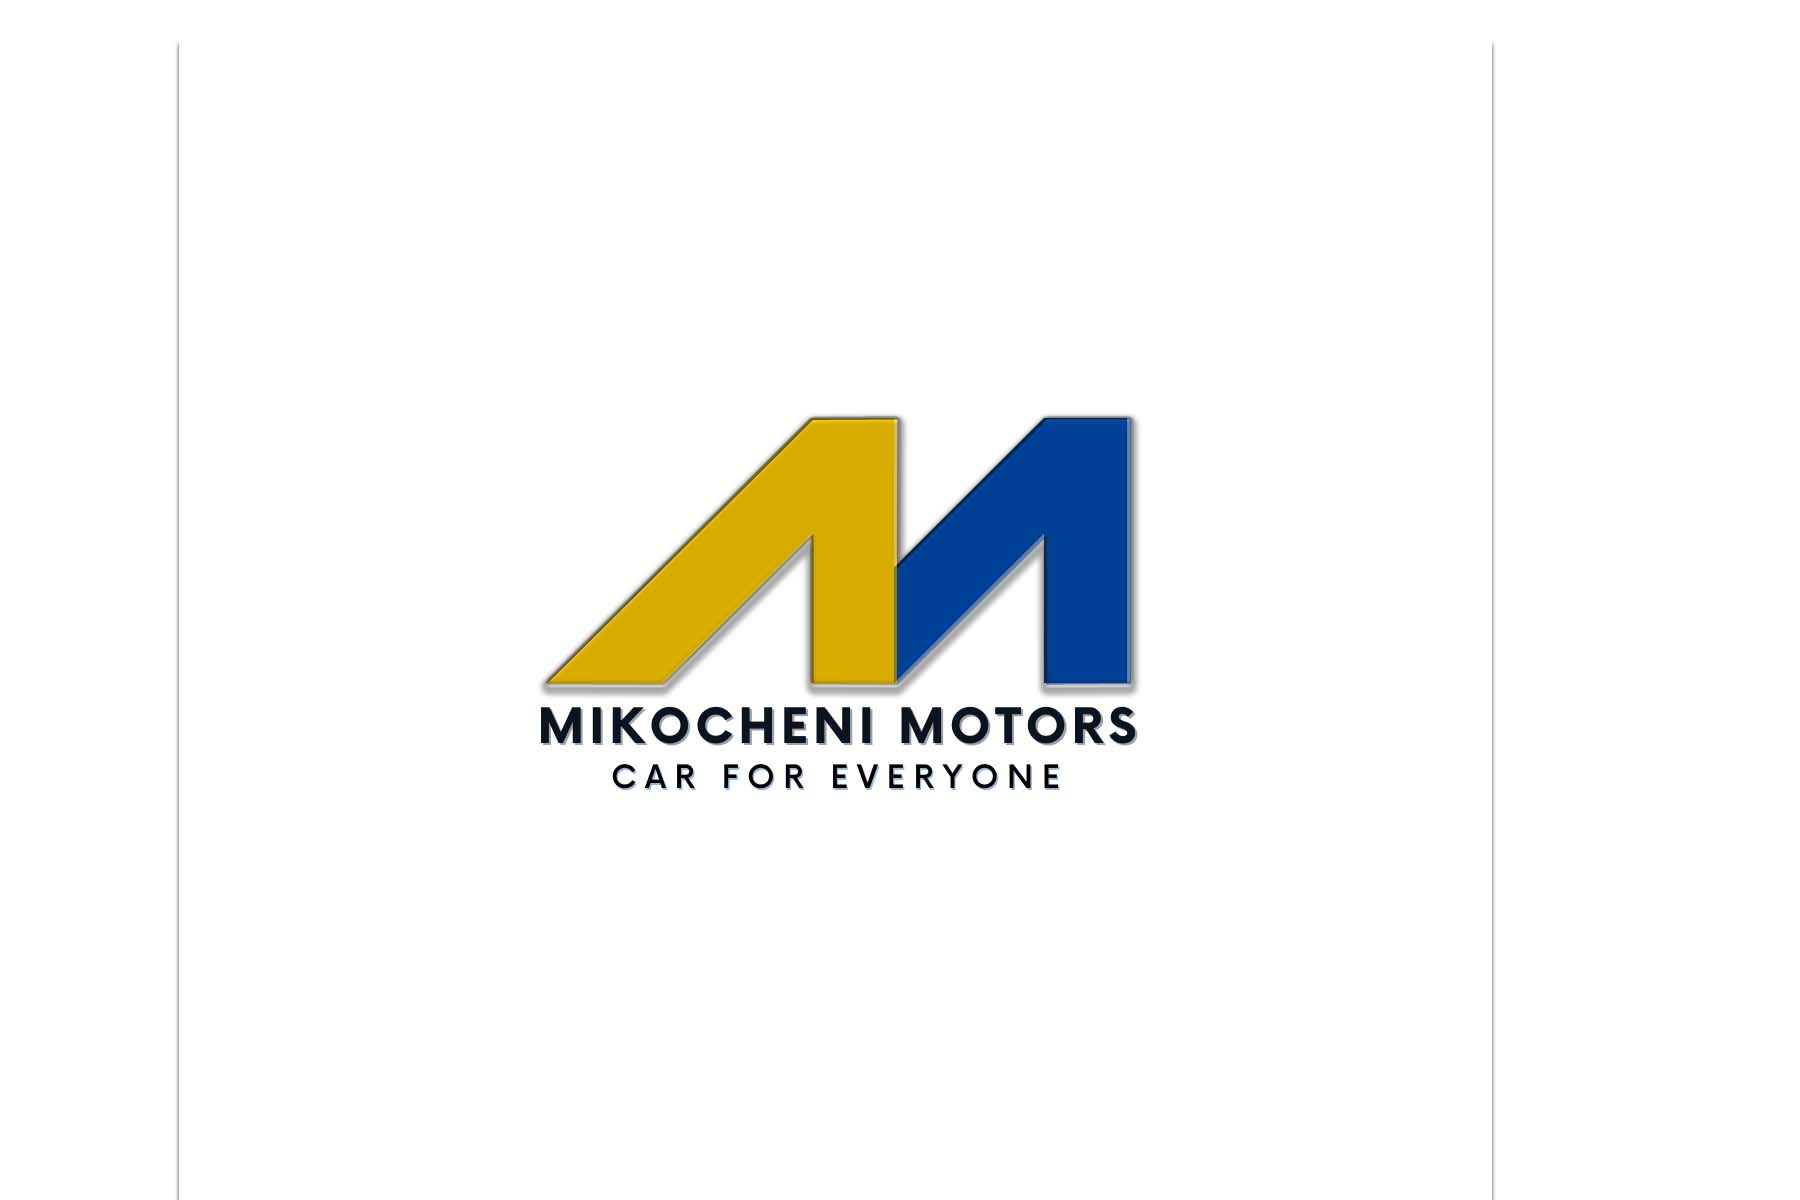 Mikocheni Motors